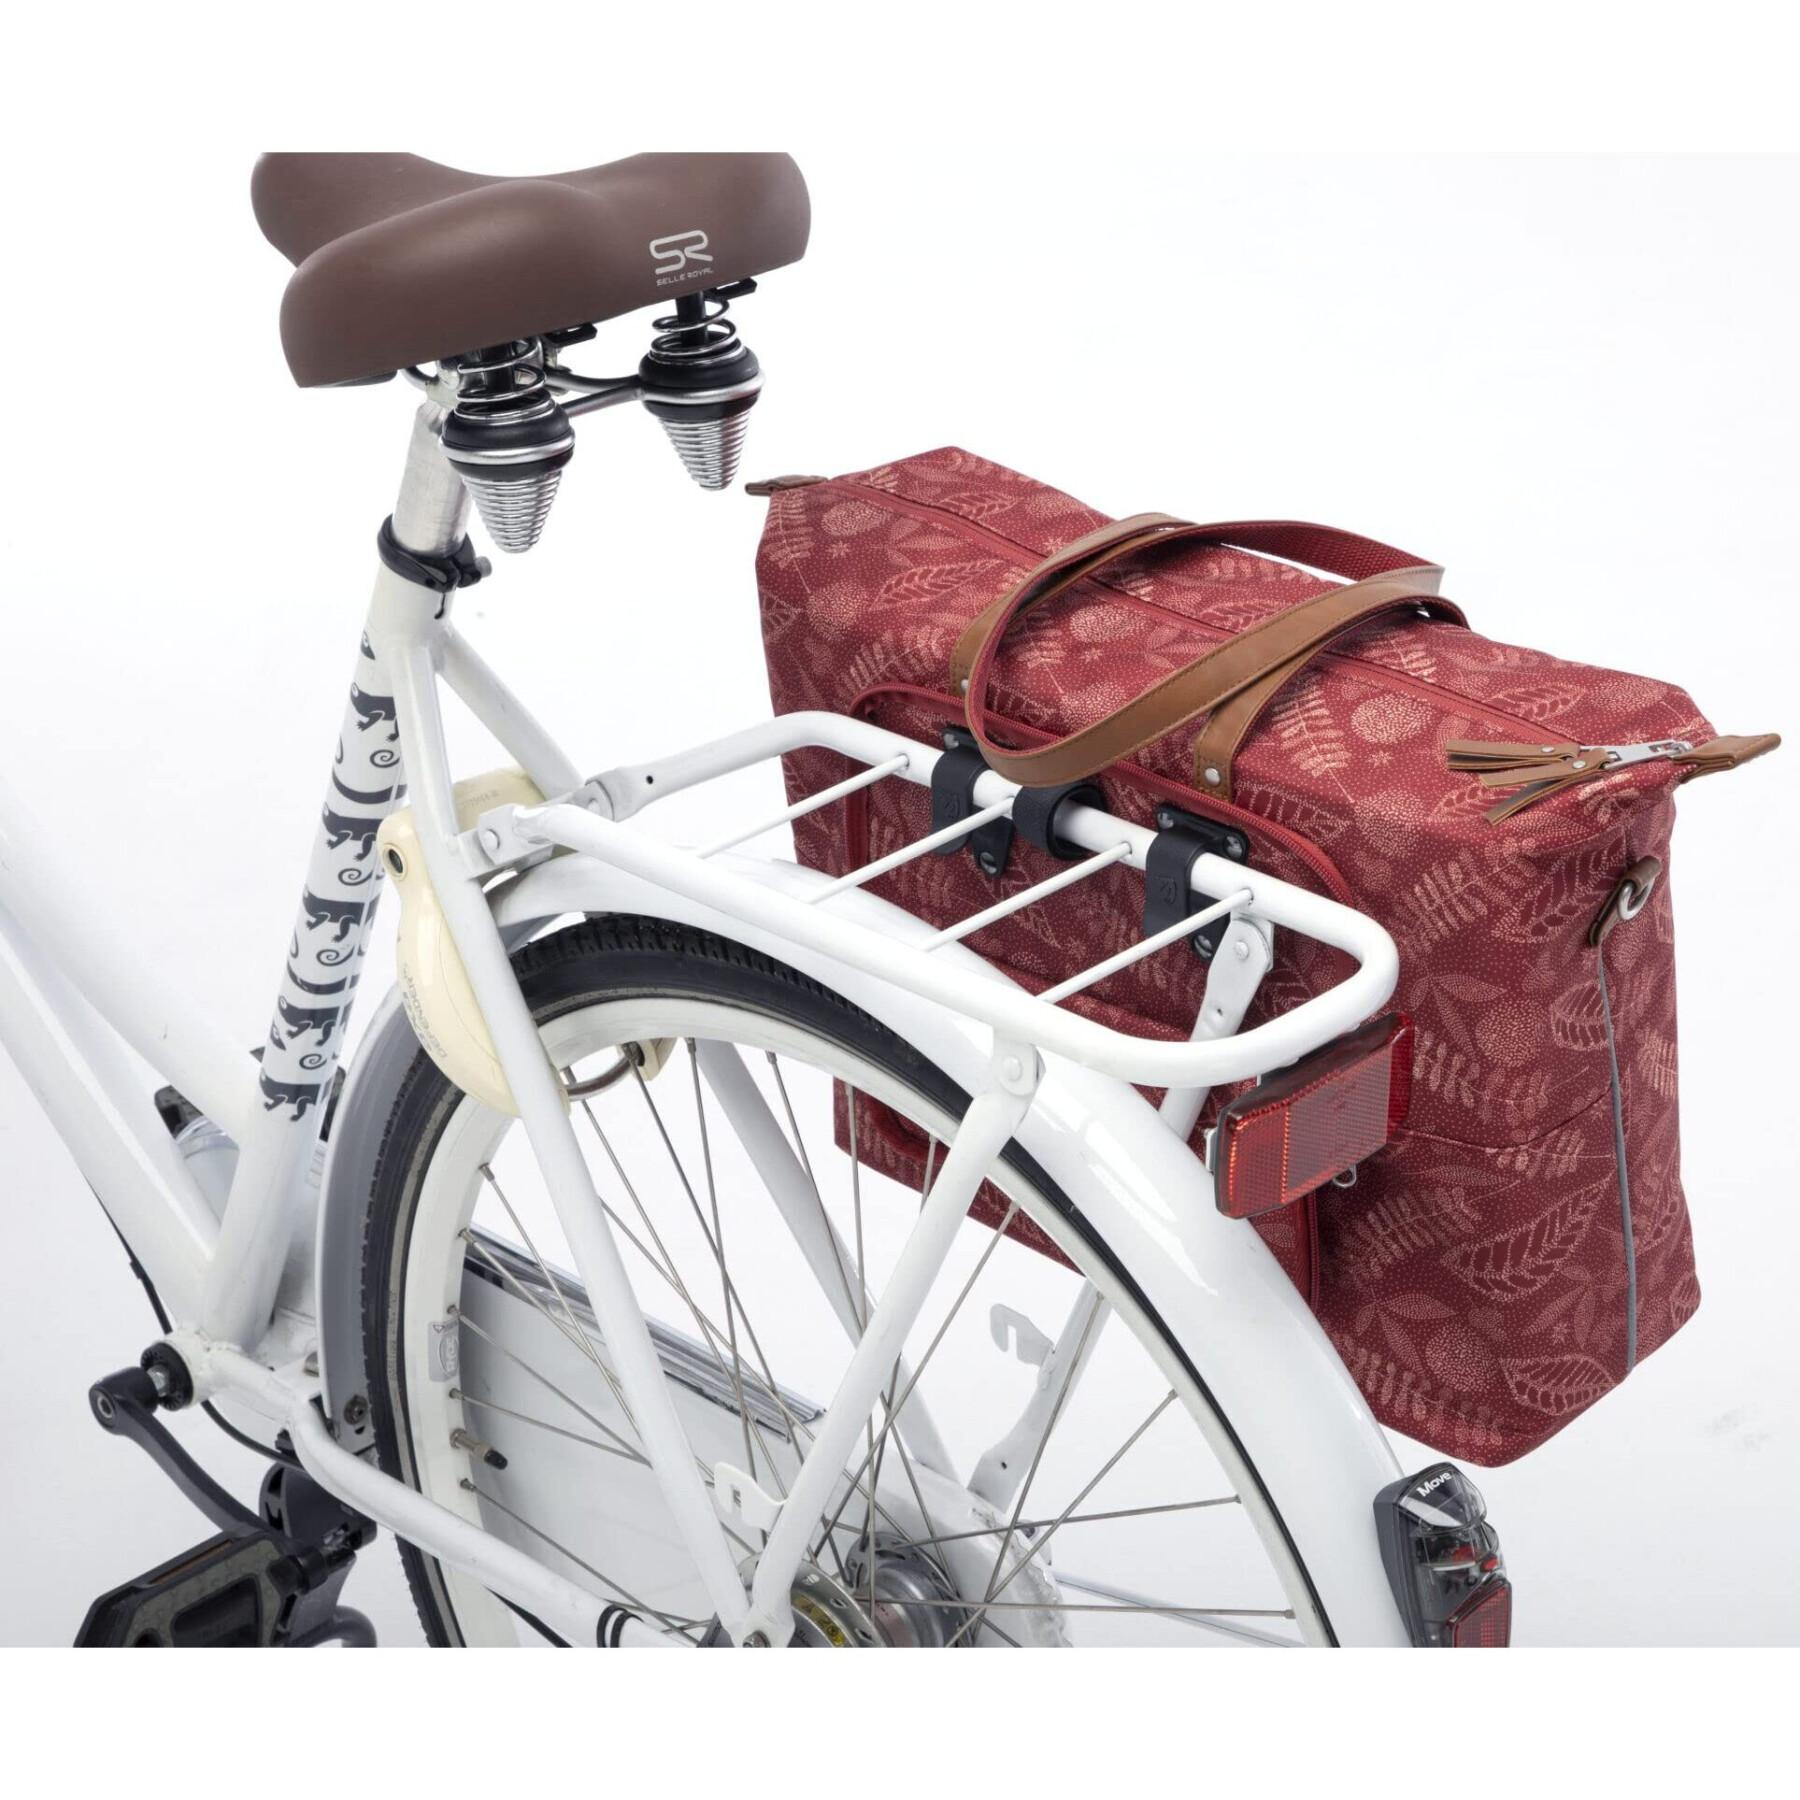 Bolsa impermeable de poliéster reflectante para bicicletas New Looxs Tendo